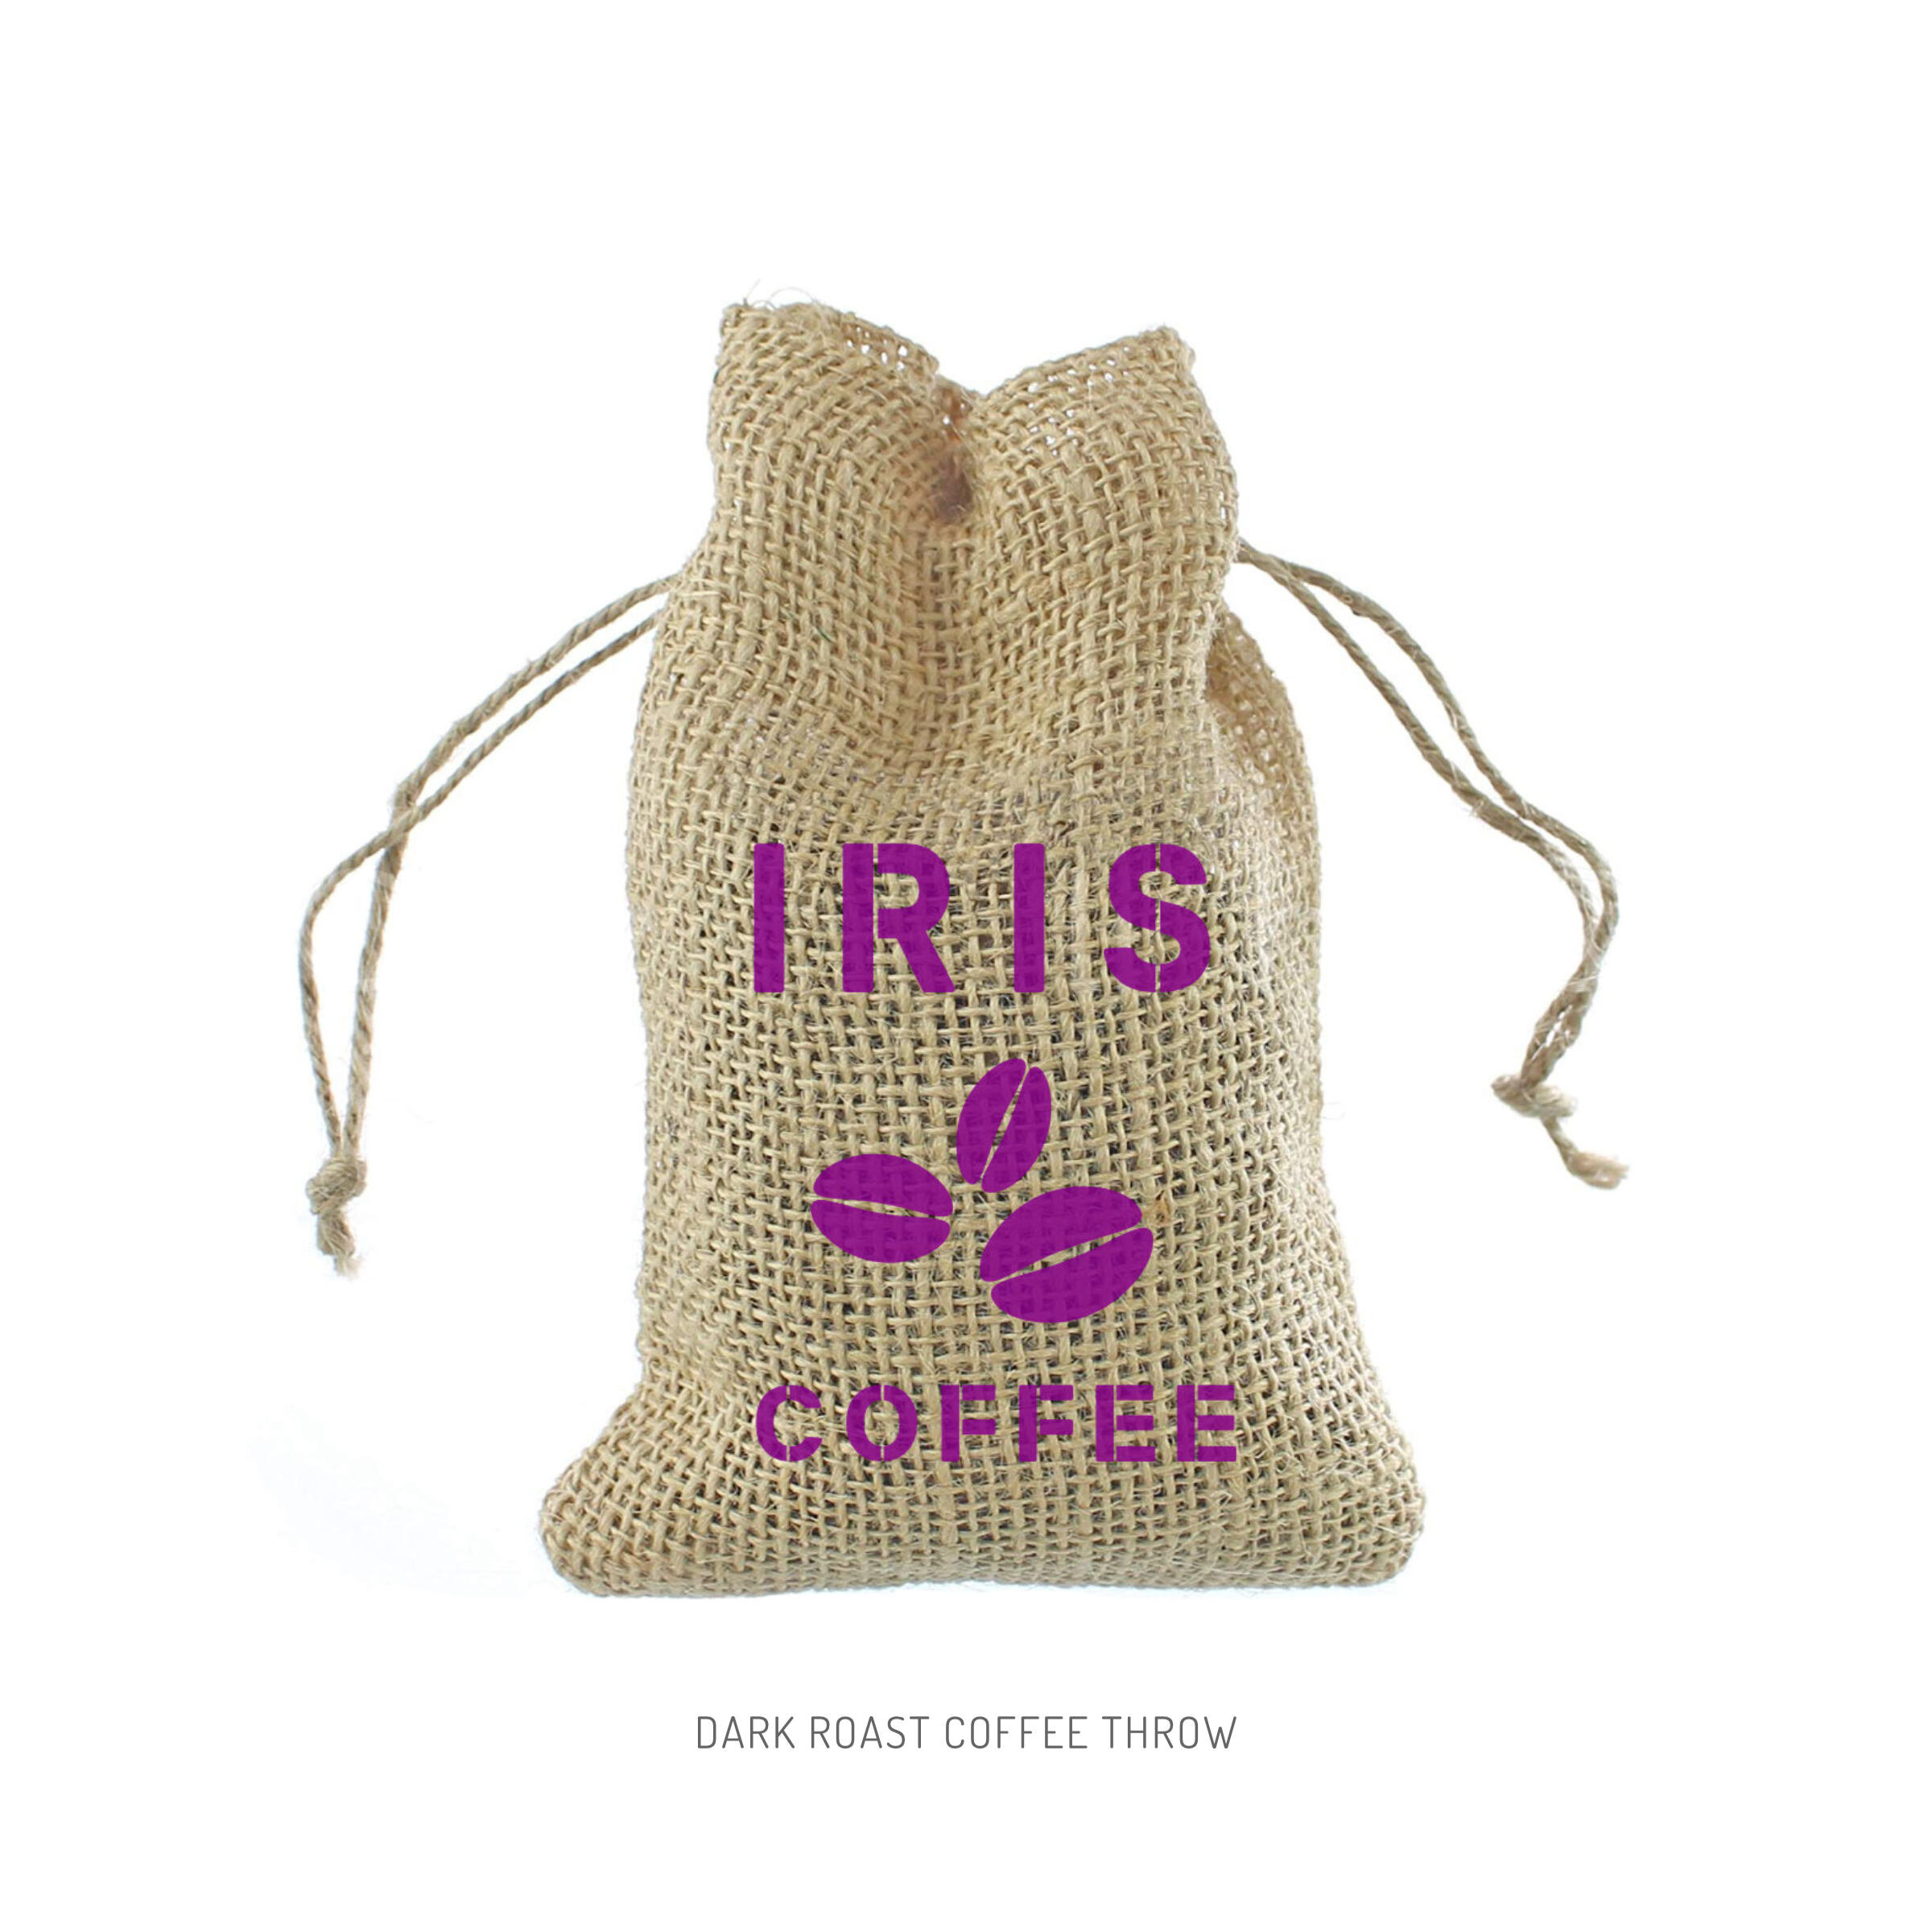 Iris Dark Roast Coffee Throw.jpg